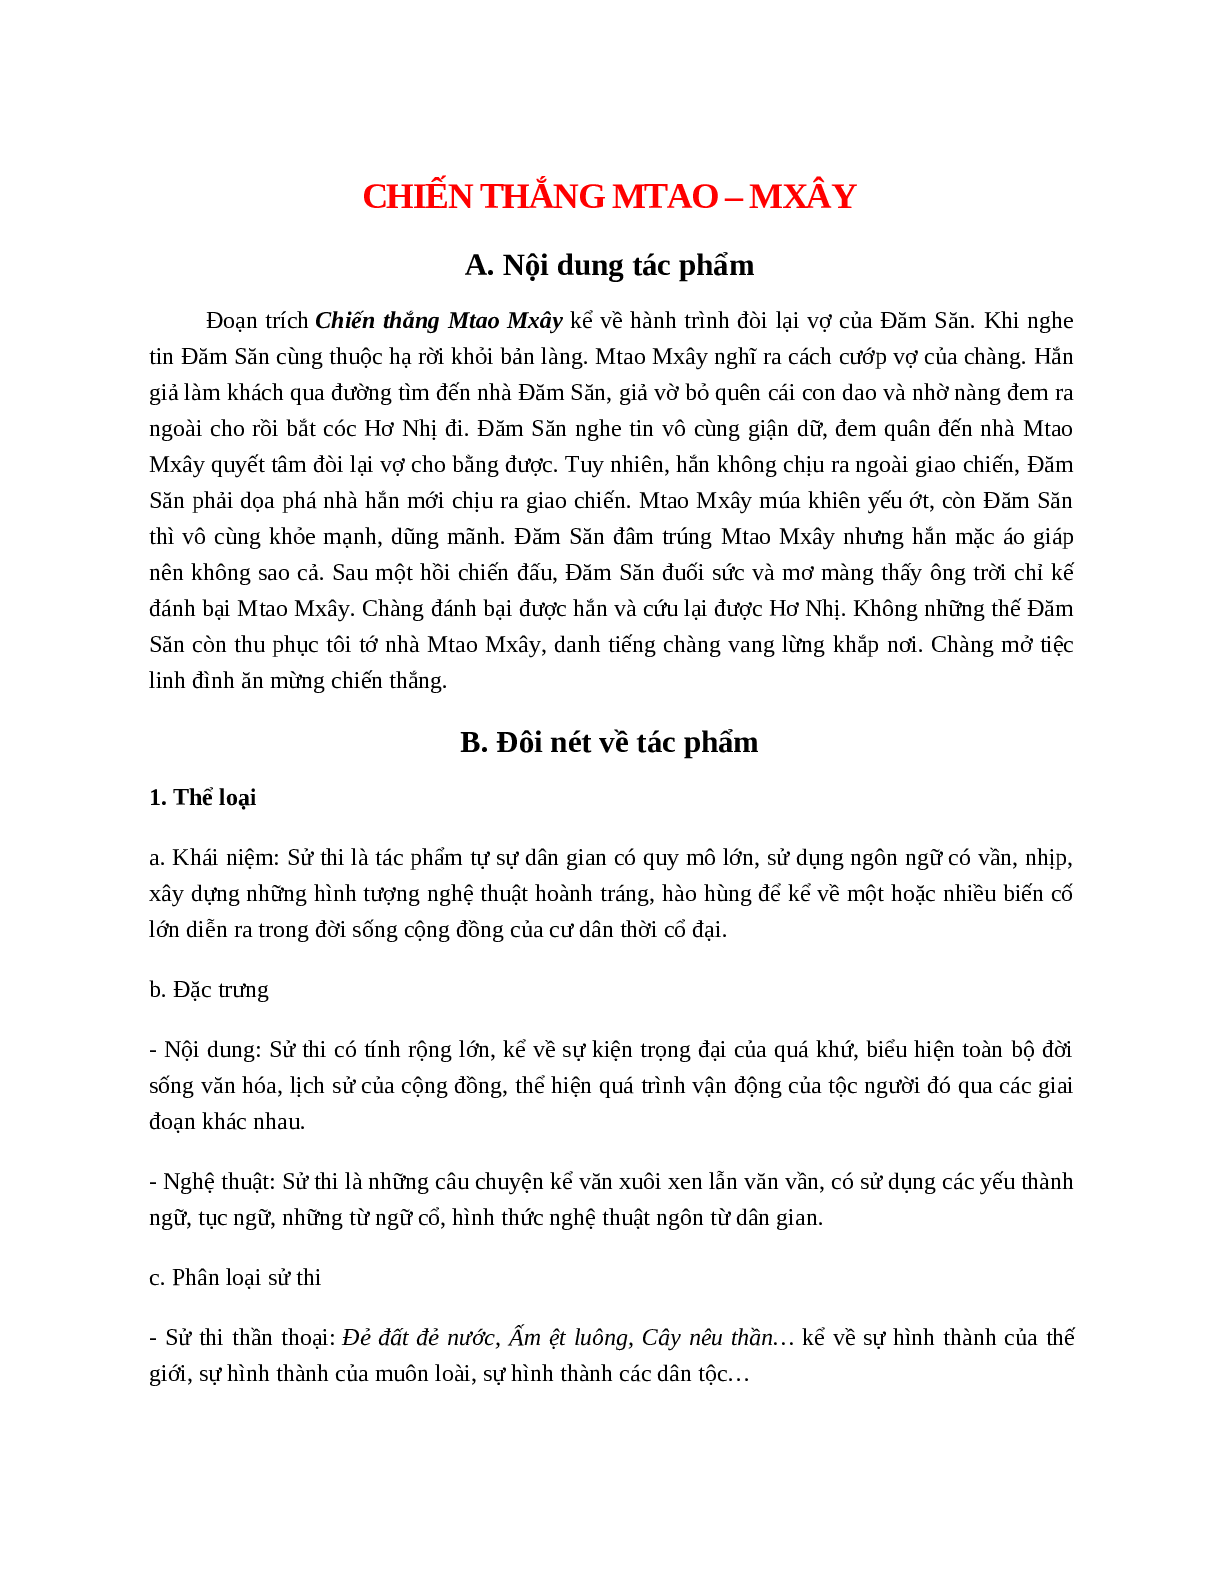 Chiến thắng Mtao-Mxây - Tác giả tác phẩm - Ngữ văn lớp 10 (trang 1)